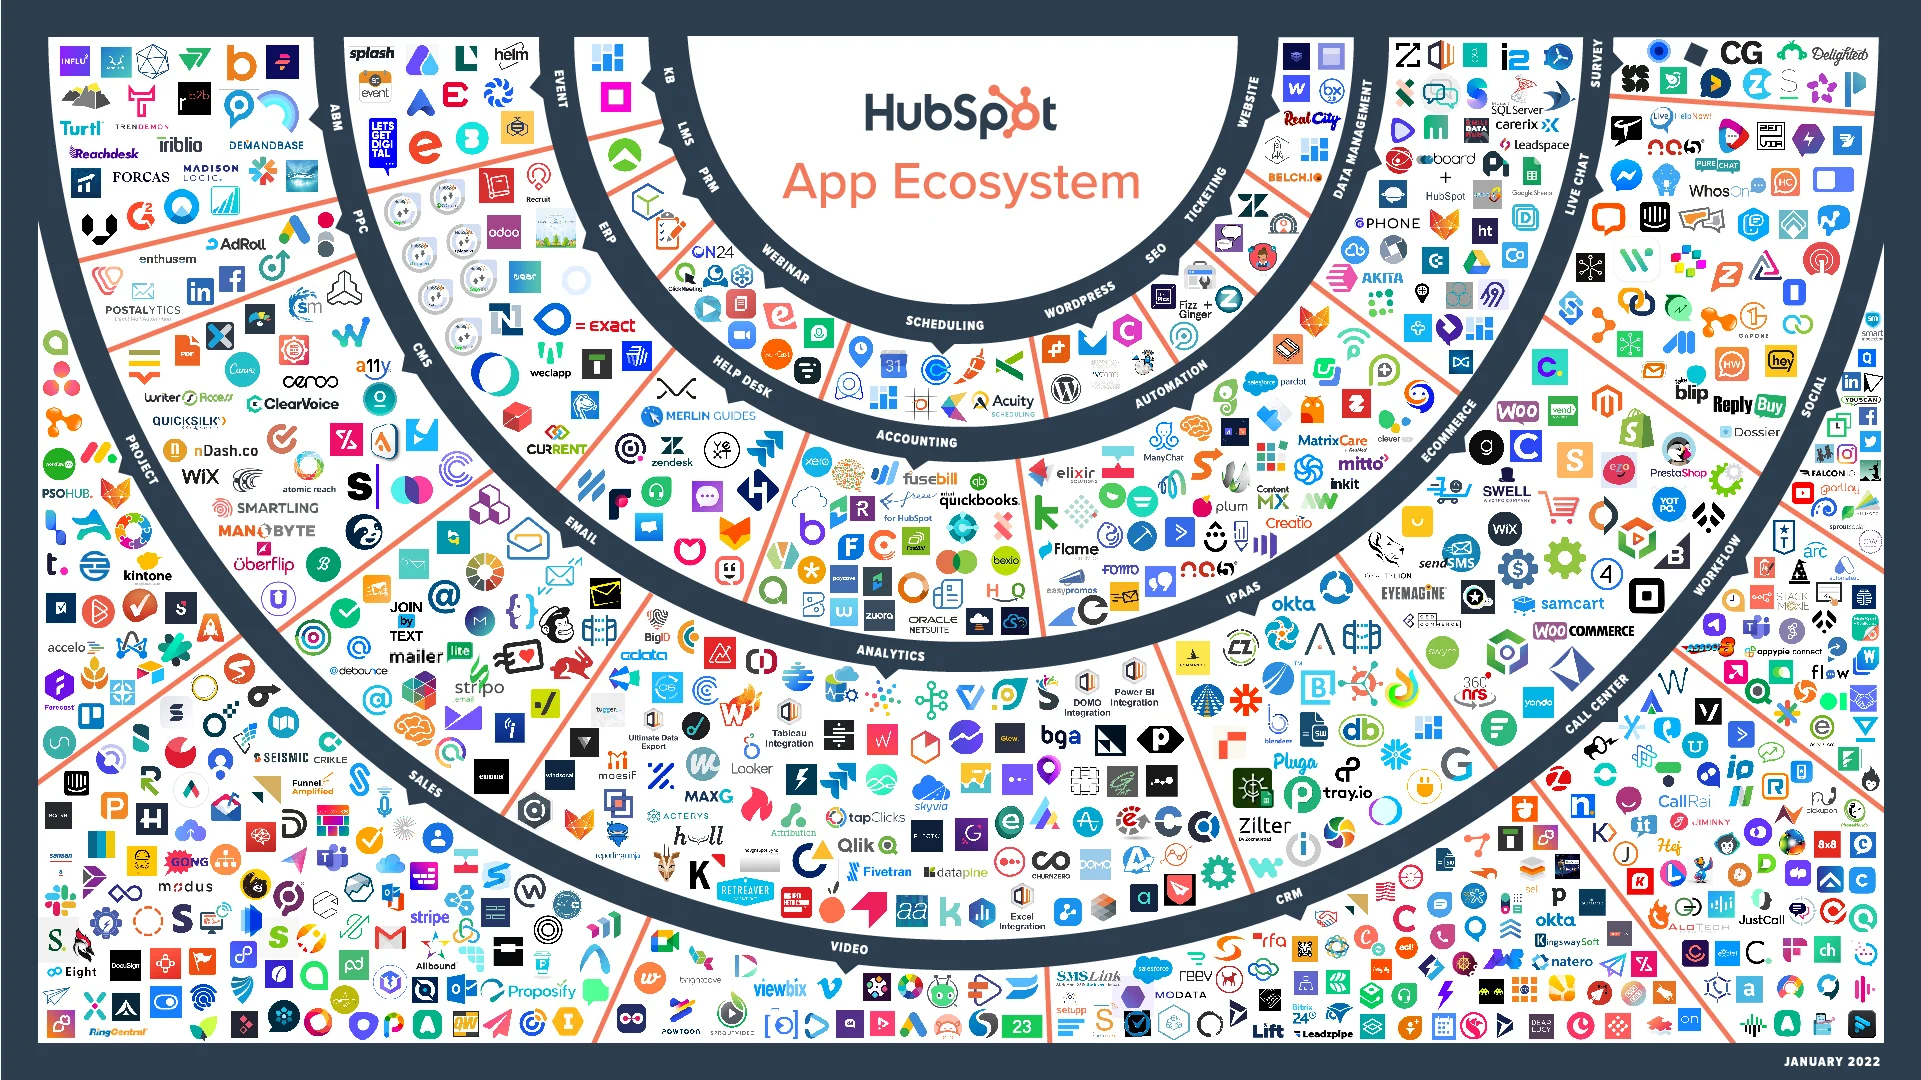 hubspot app ecosystem 2021